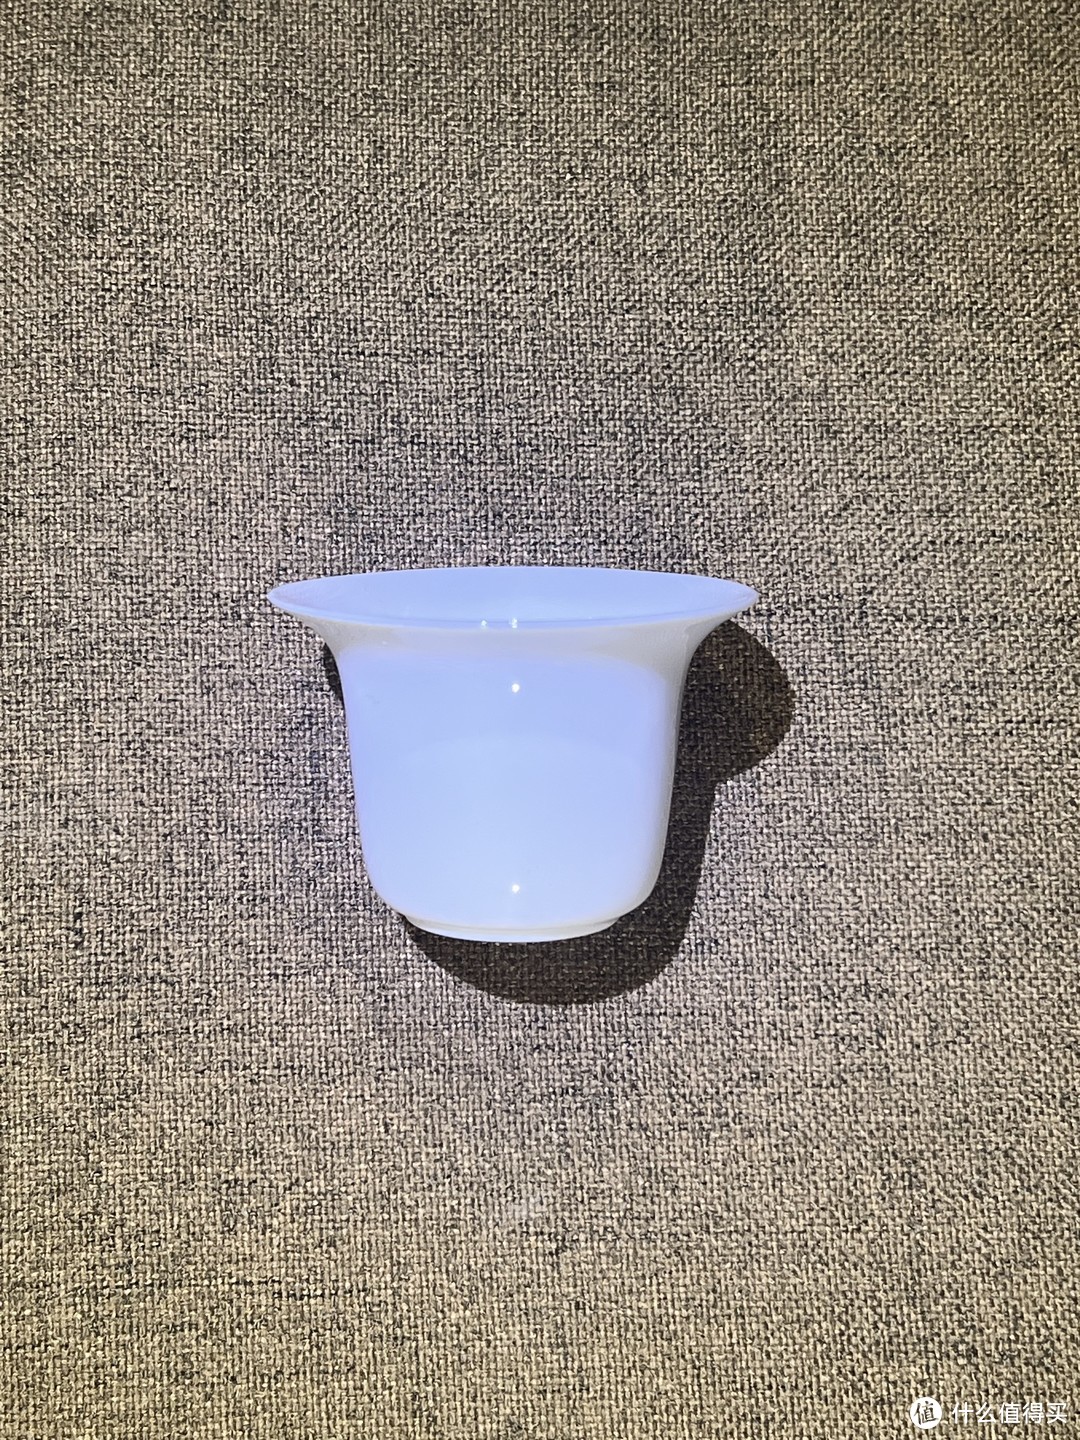 中国白瓷茶杯测评：历时一个月几款白瓷茶杯试用总结，温润如玉洁面光滑的经典白瓷茶具茶杯！